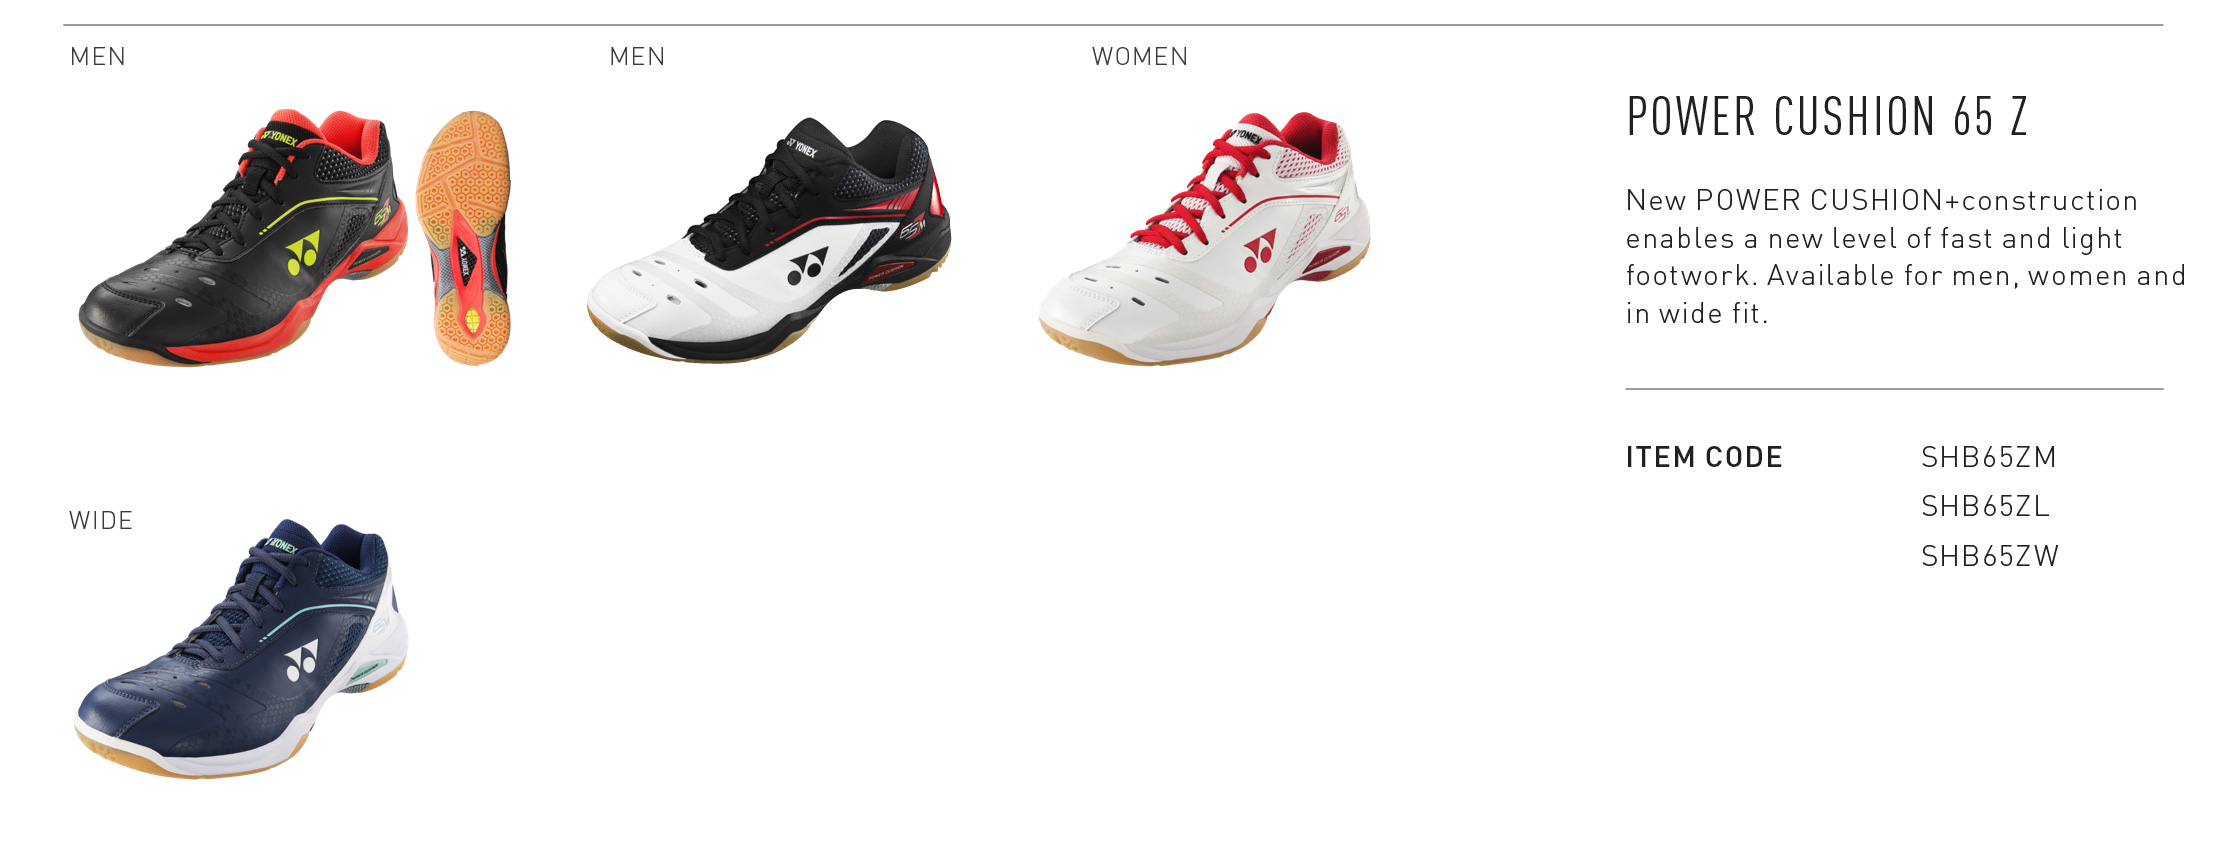 เกี่ยวกับสินค้า รองเท้าแบดมินตัน YONEX รุ่น POWER CUSHION 65 Z  WOMEN  (SHB65ZL) รองเท้าให้ความกระชับเท้าและความมั่นคงเพื่อตอบสนองการเคลื่อนไหวที่รวดเร็ว